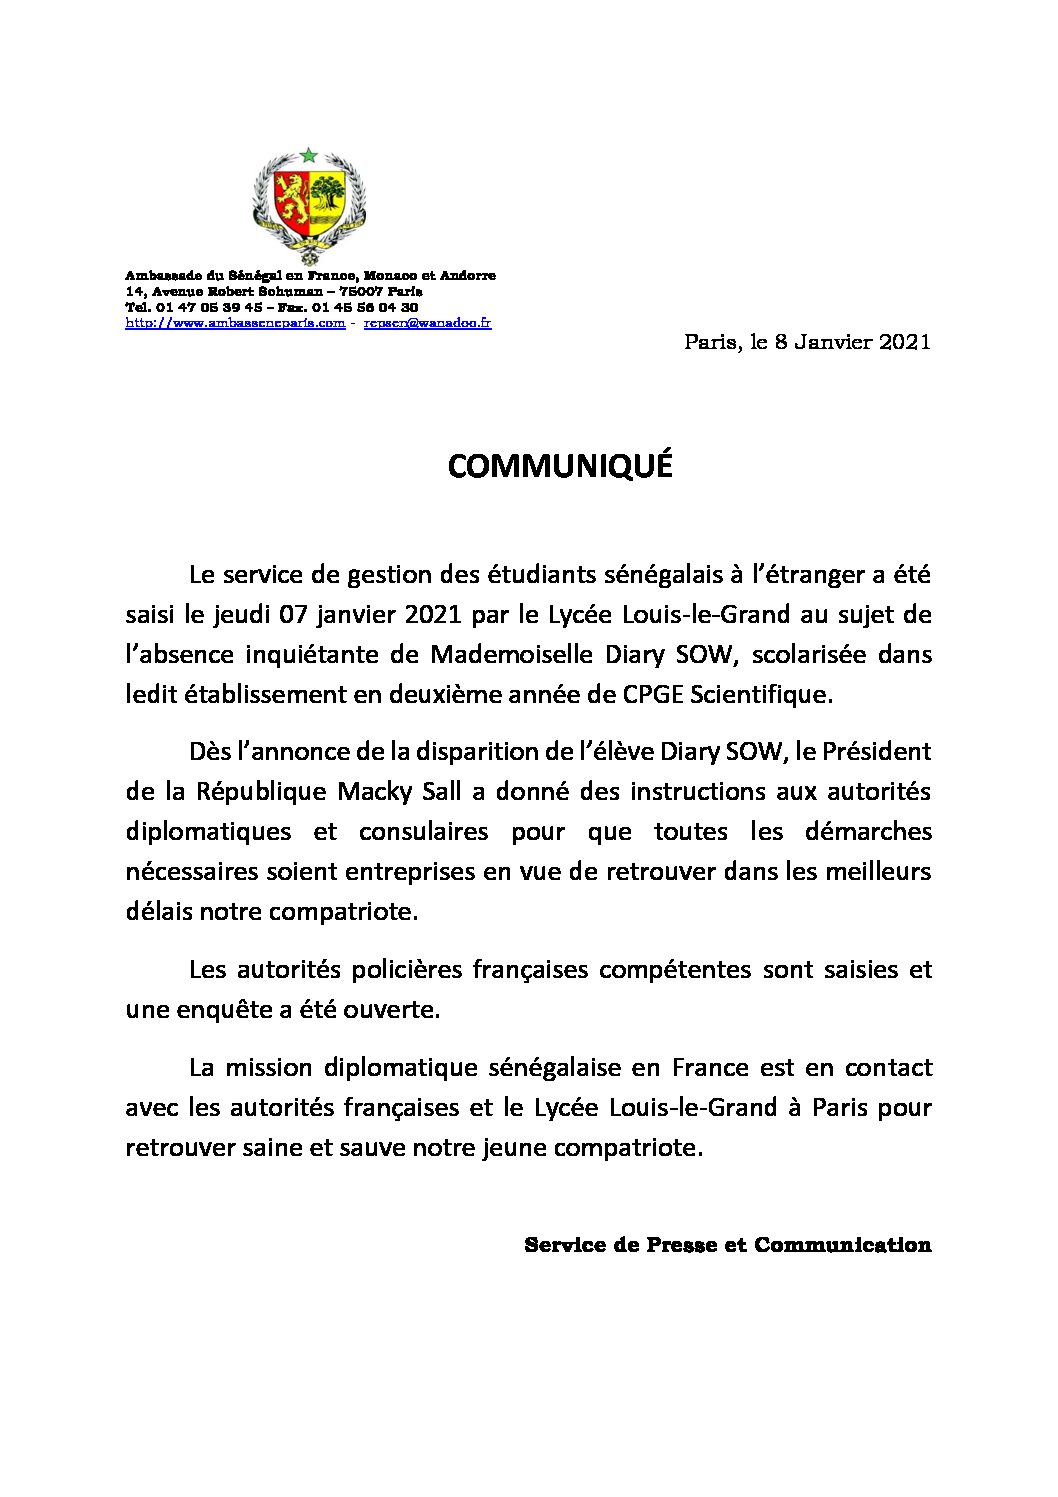 Communiqué Diary SOW 08 01 2021 1 pdf - France- Disparition de Diary Sow: L'ambassadeur Maguette Séye "Nous sollicitons des prières pour la retrouver saine et sauve".